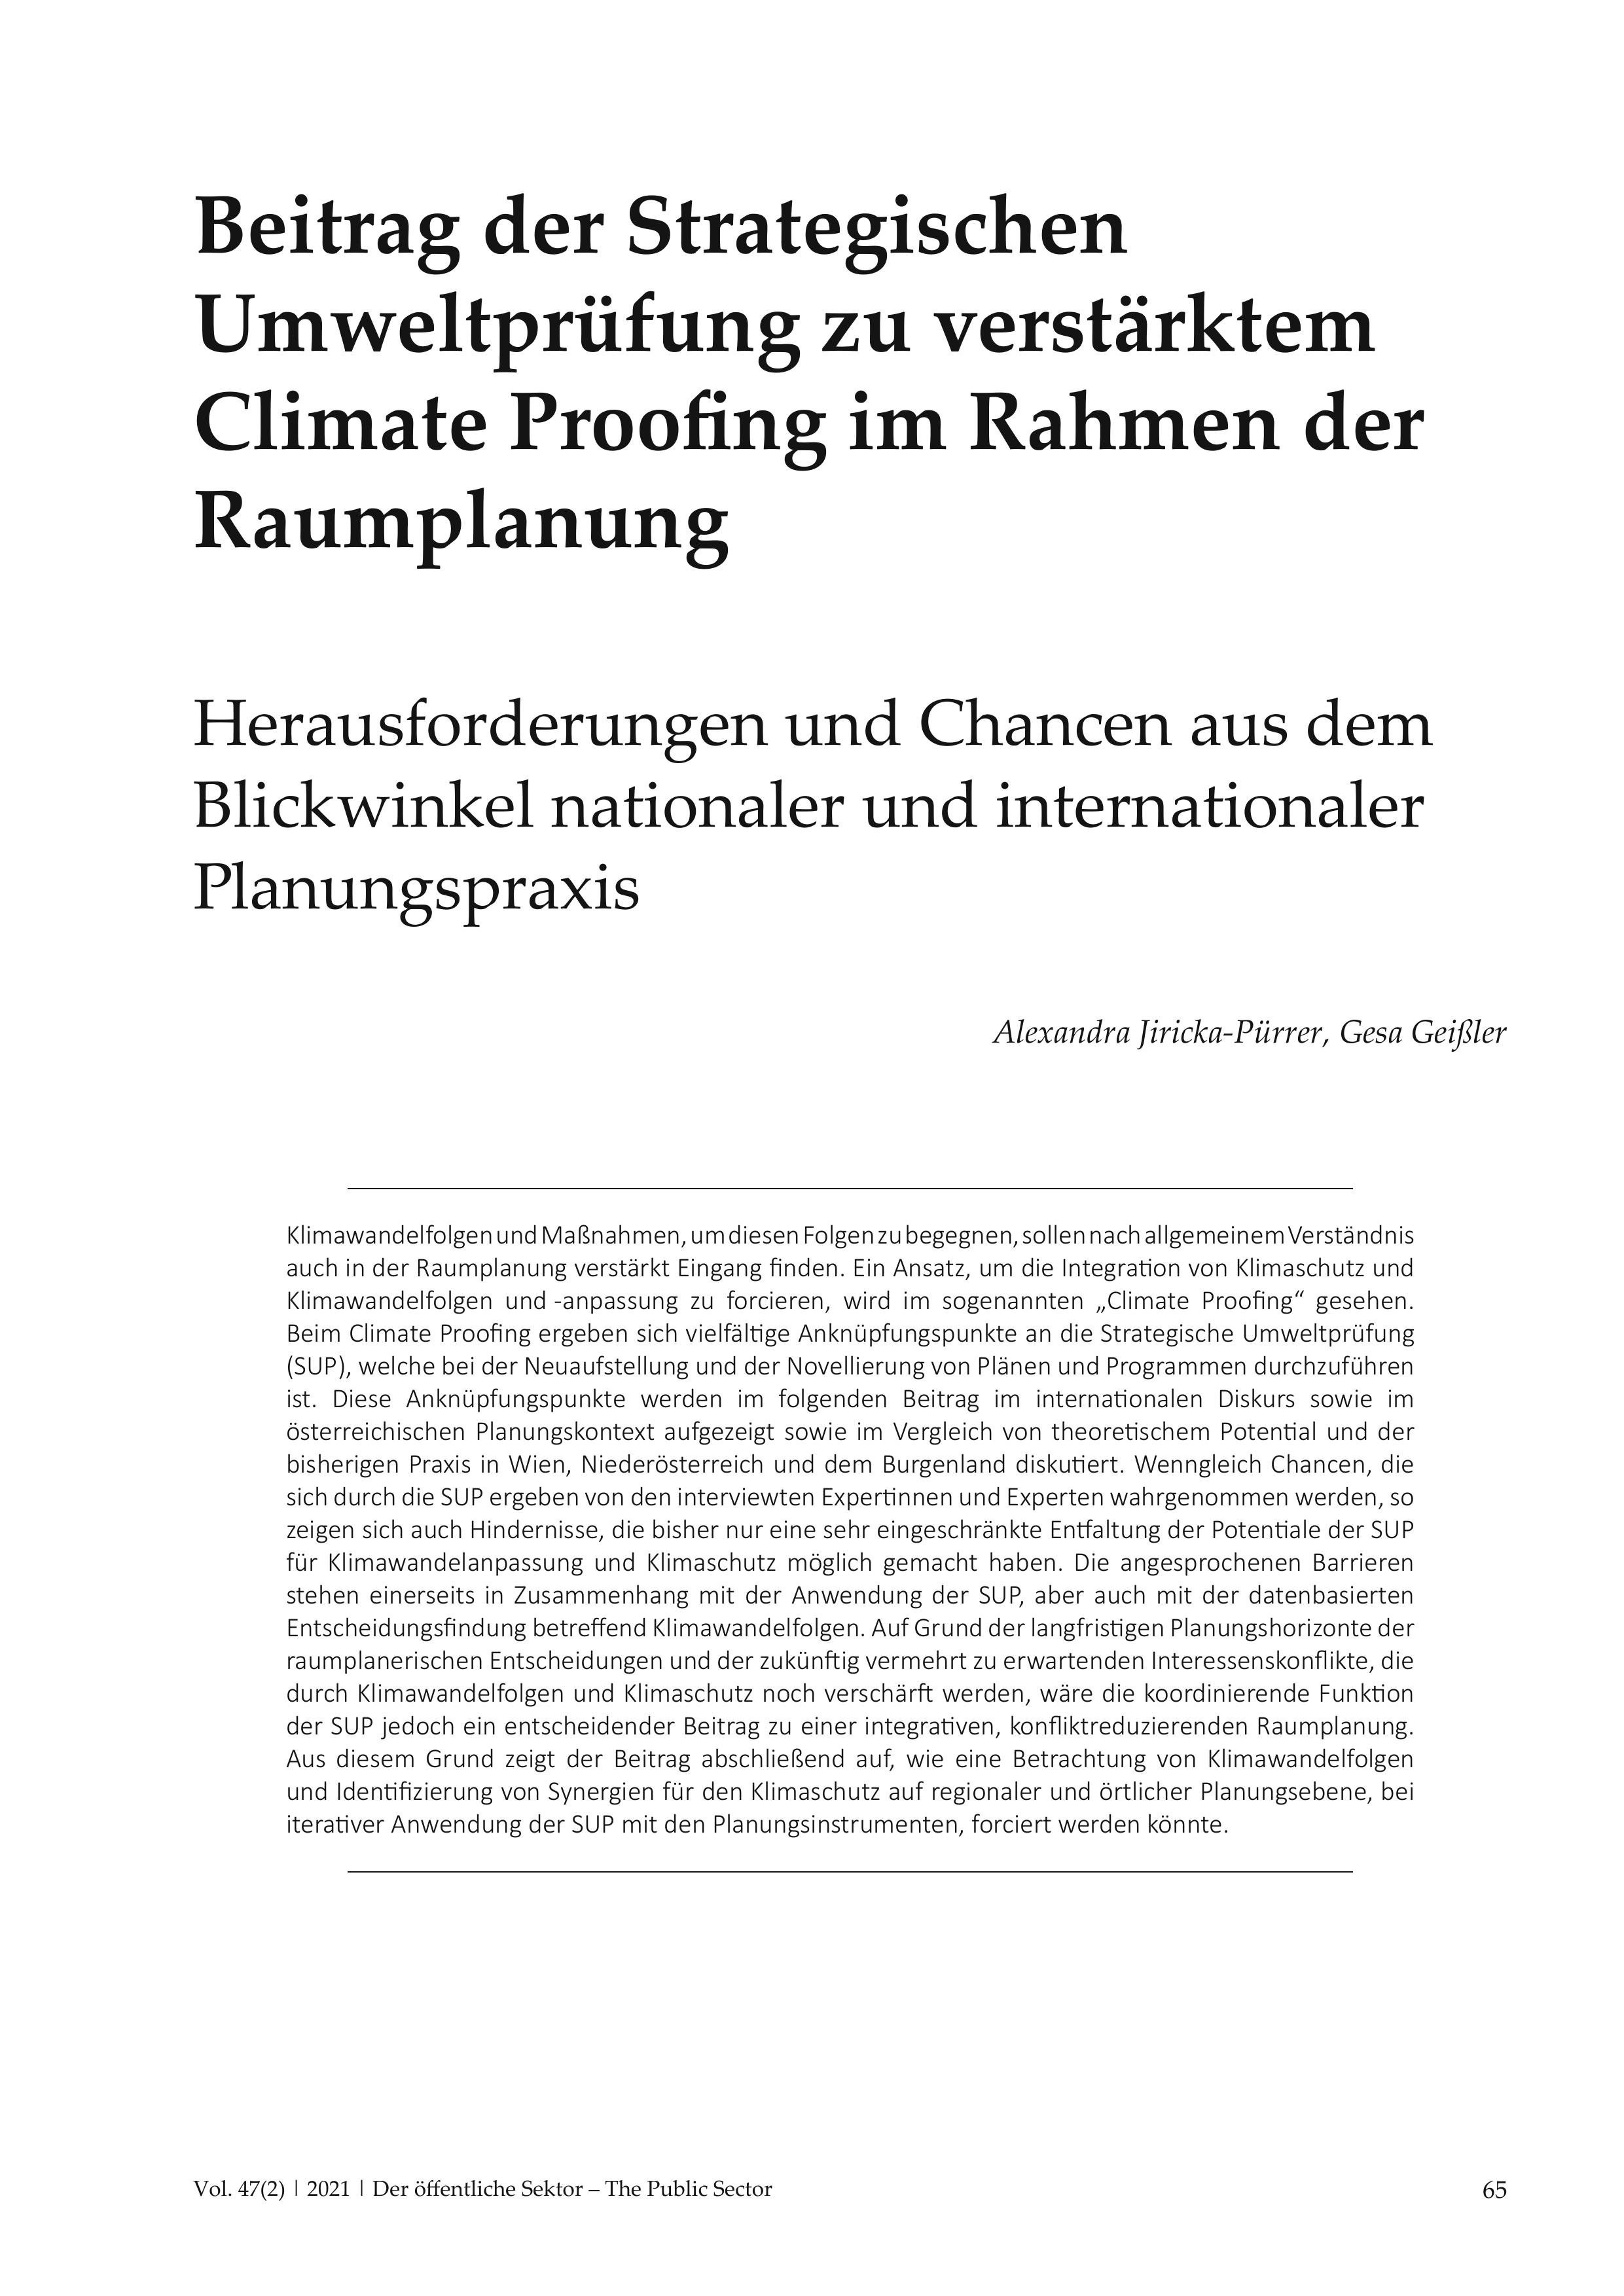 Beitrag der Strategischen Umweltprüfung zu verstärktem Climate Proofing im Rahmen der Raumplanung Herausforderungen und Chancen aus dem Blickwinkel nationaler und internationaler Planungspraxis